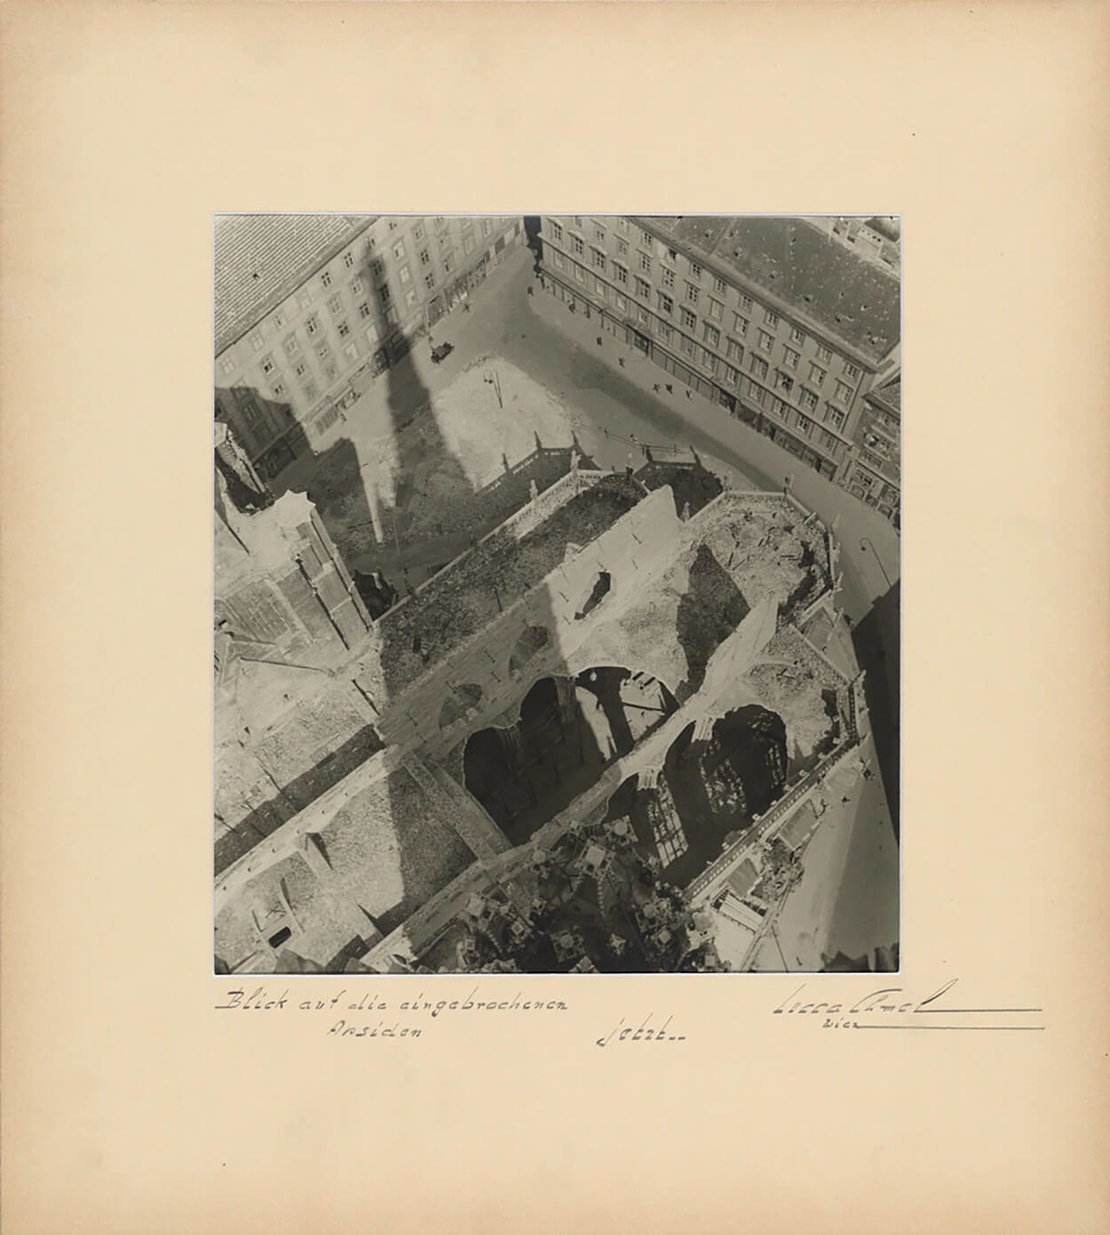 Lucca Chmel: „Blick auf die eingebrochenen Apsiden, jetzt ..." Chor mit Schatten vom Südturm des Stephansdoms von oben, 1945, Wien Museum 